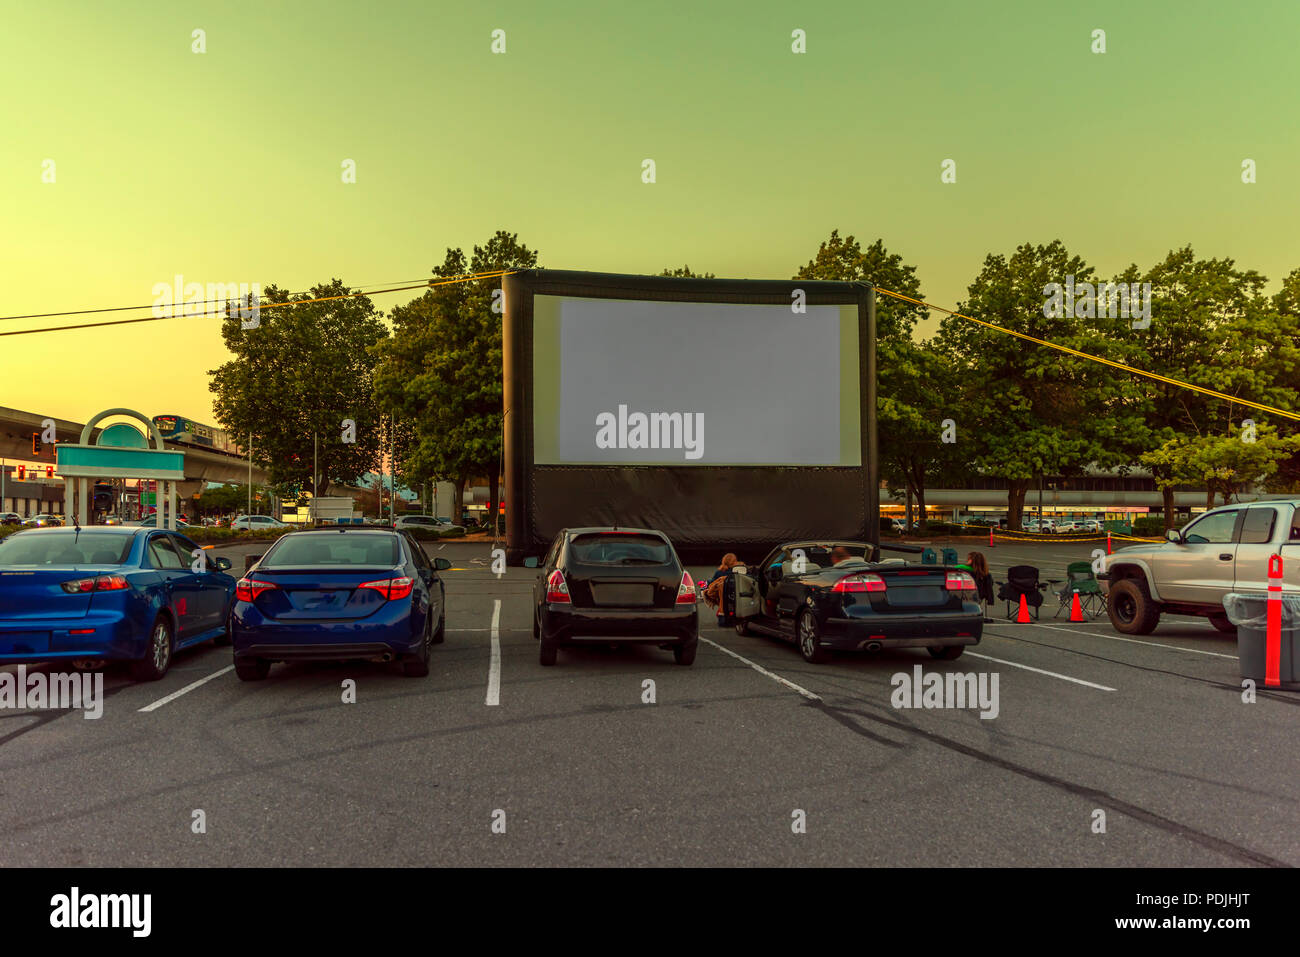 Die Zuschauer auf einem Parkplatz mit Autos, eine Aufblasbare Maske des Sommerkino, warten auf einen Film. Eine S-Bahn durch ein Viadukt. Stockfoto